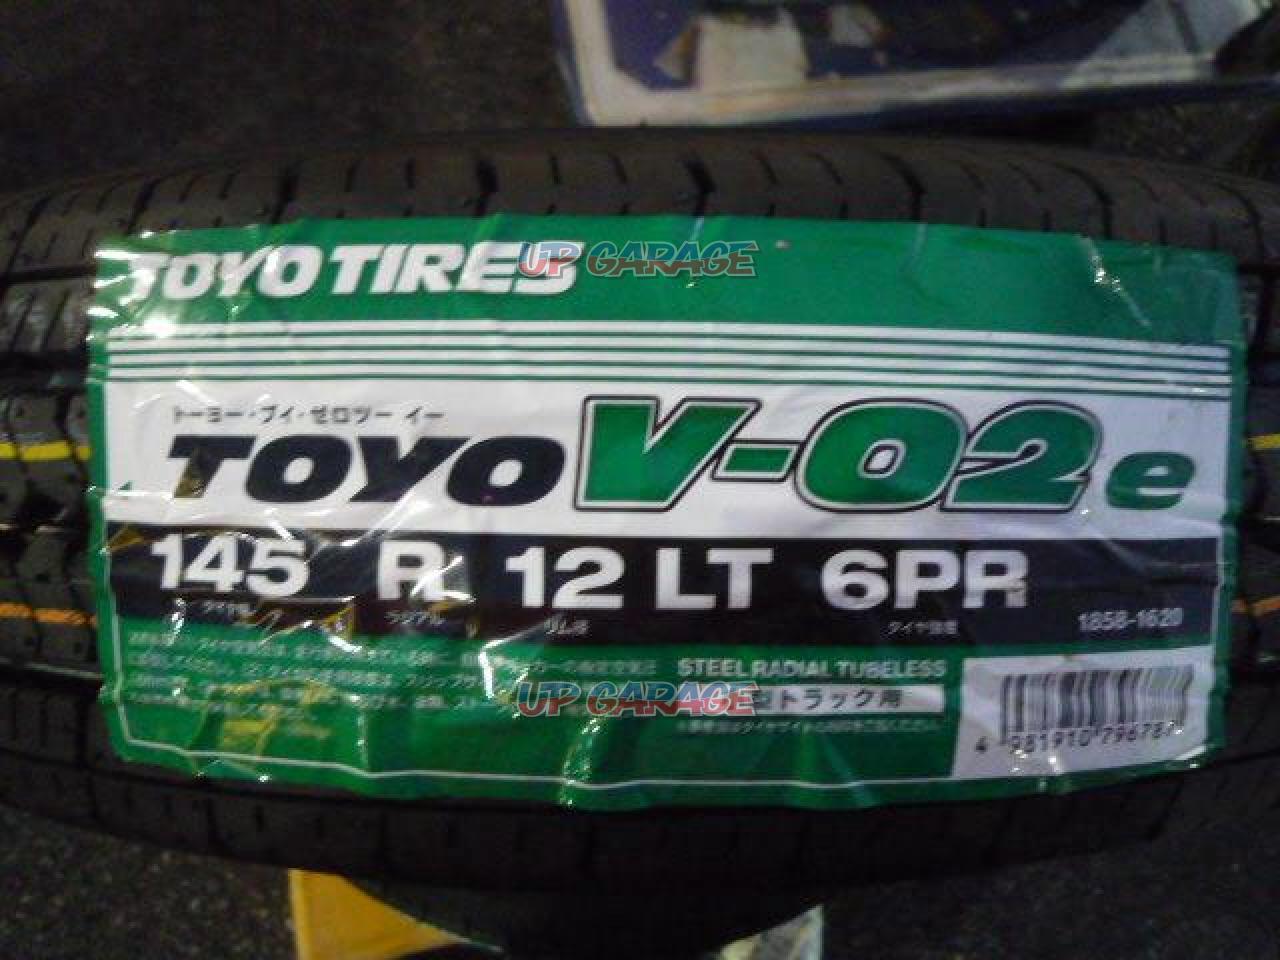 TOYO V02e 145R12 6PR サマータイヤ LT バン 4本セット - 2